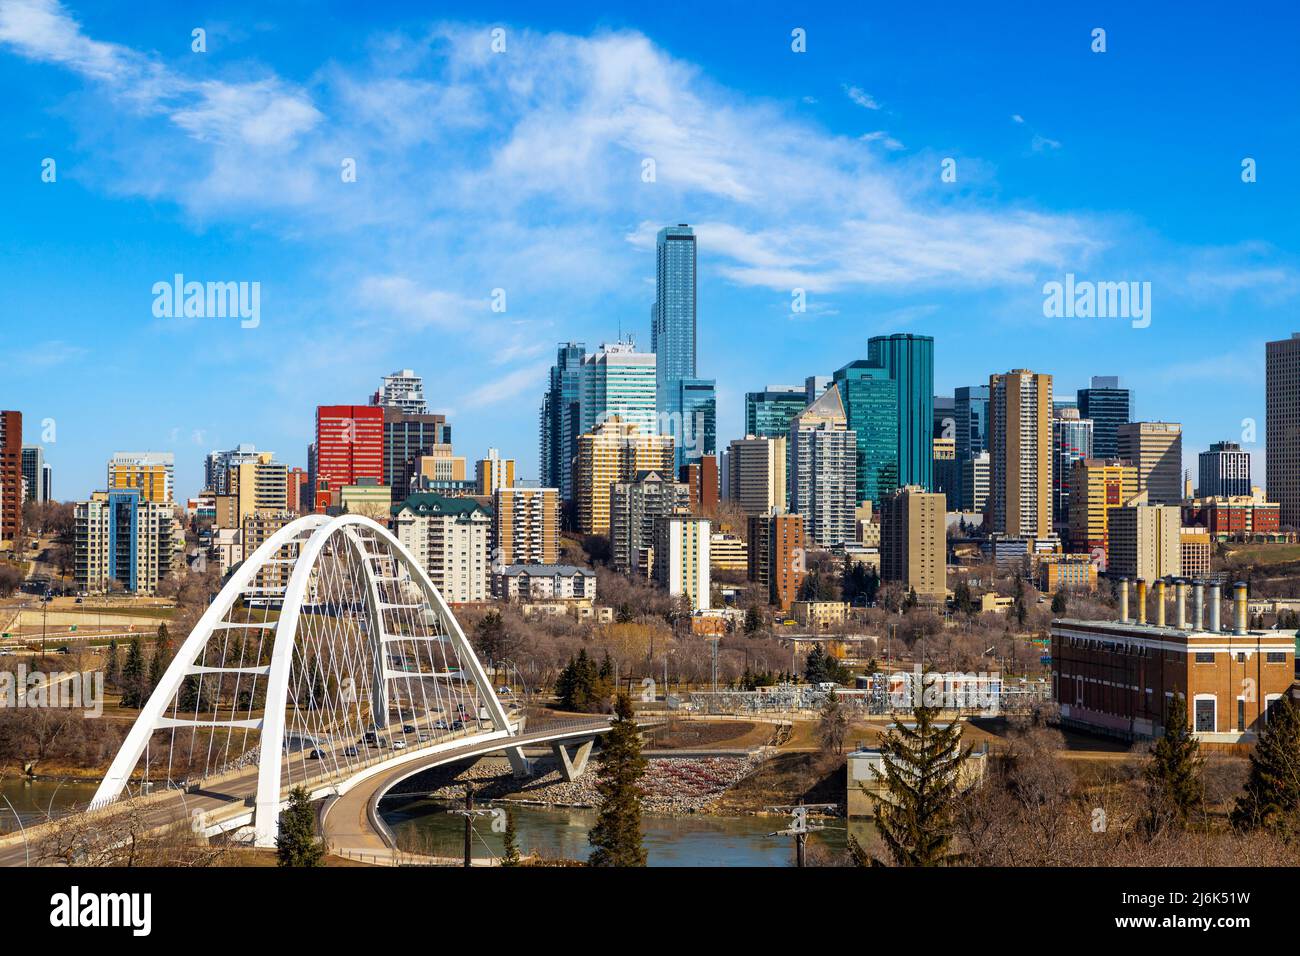 Lo skyline del centro di Edmonton mostra il ponte di Walterdale attraverso il fiume Saskatchewan e i grattacieli circostanti. Edmonton è la capitale di Alberta, Canada. Foto Stock